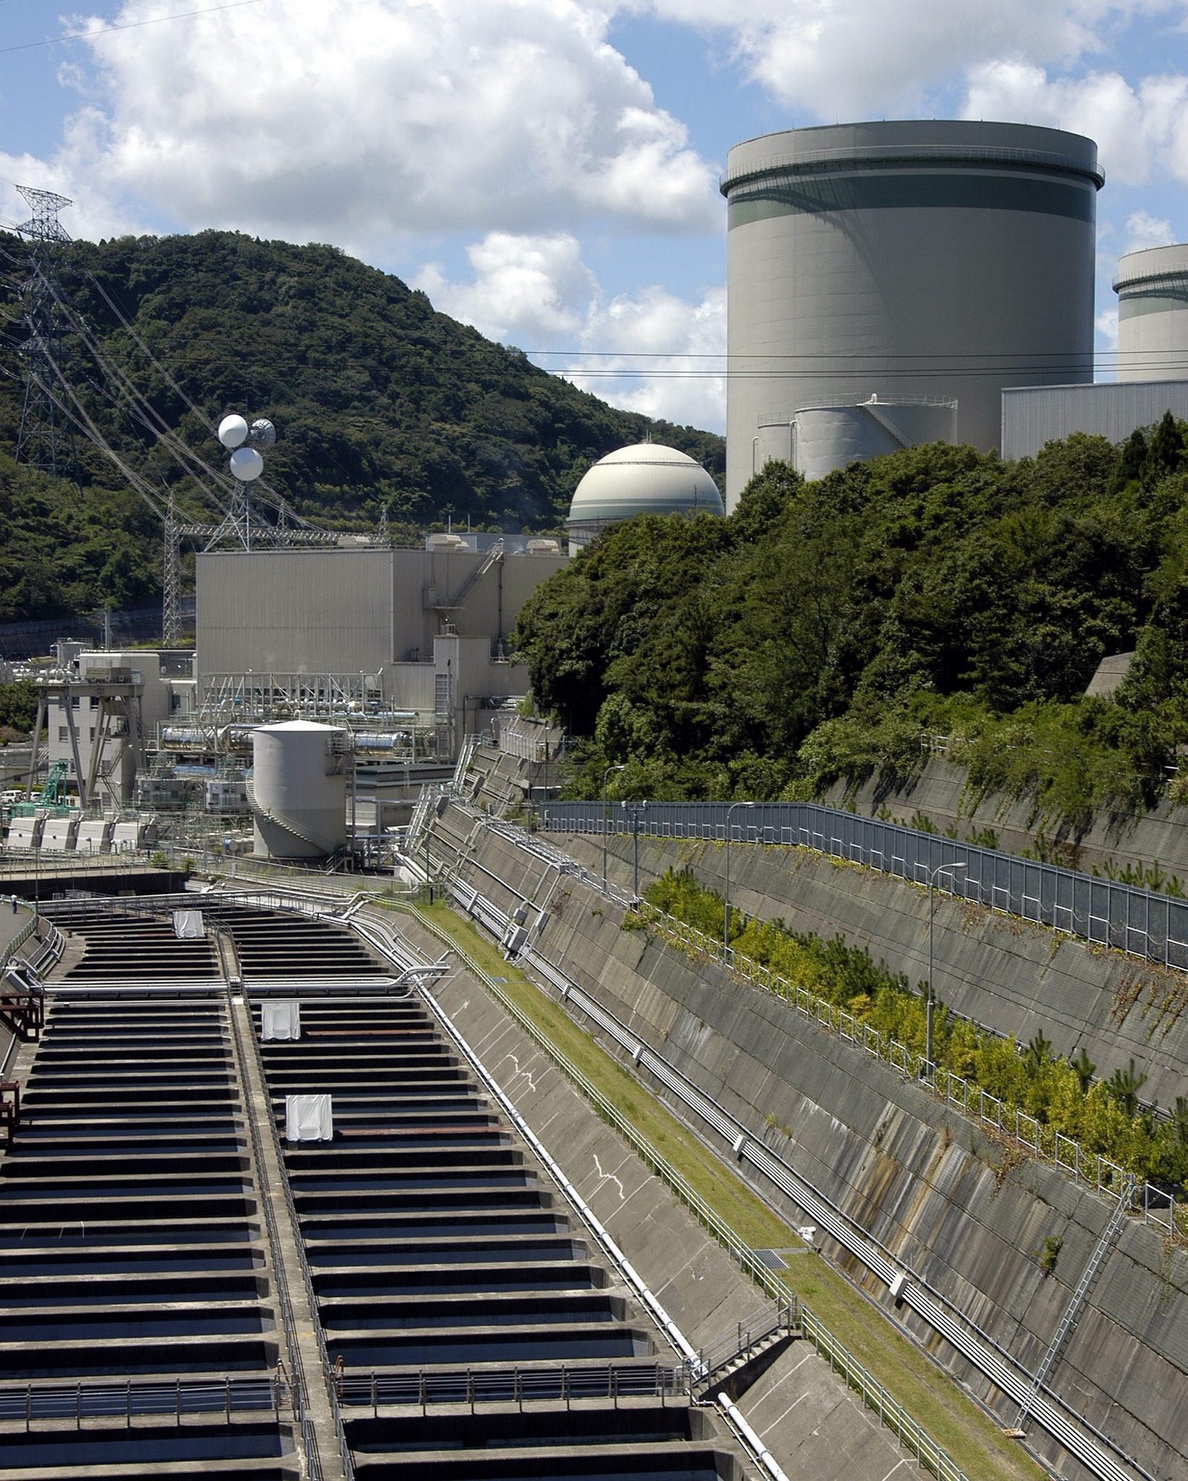 La segunda central nuclear en Japón supera el control de seguridad posFukushima